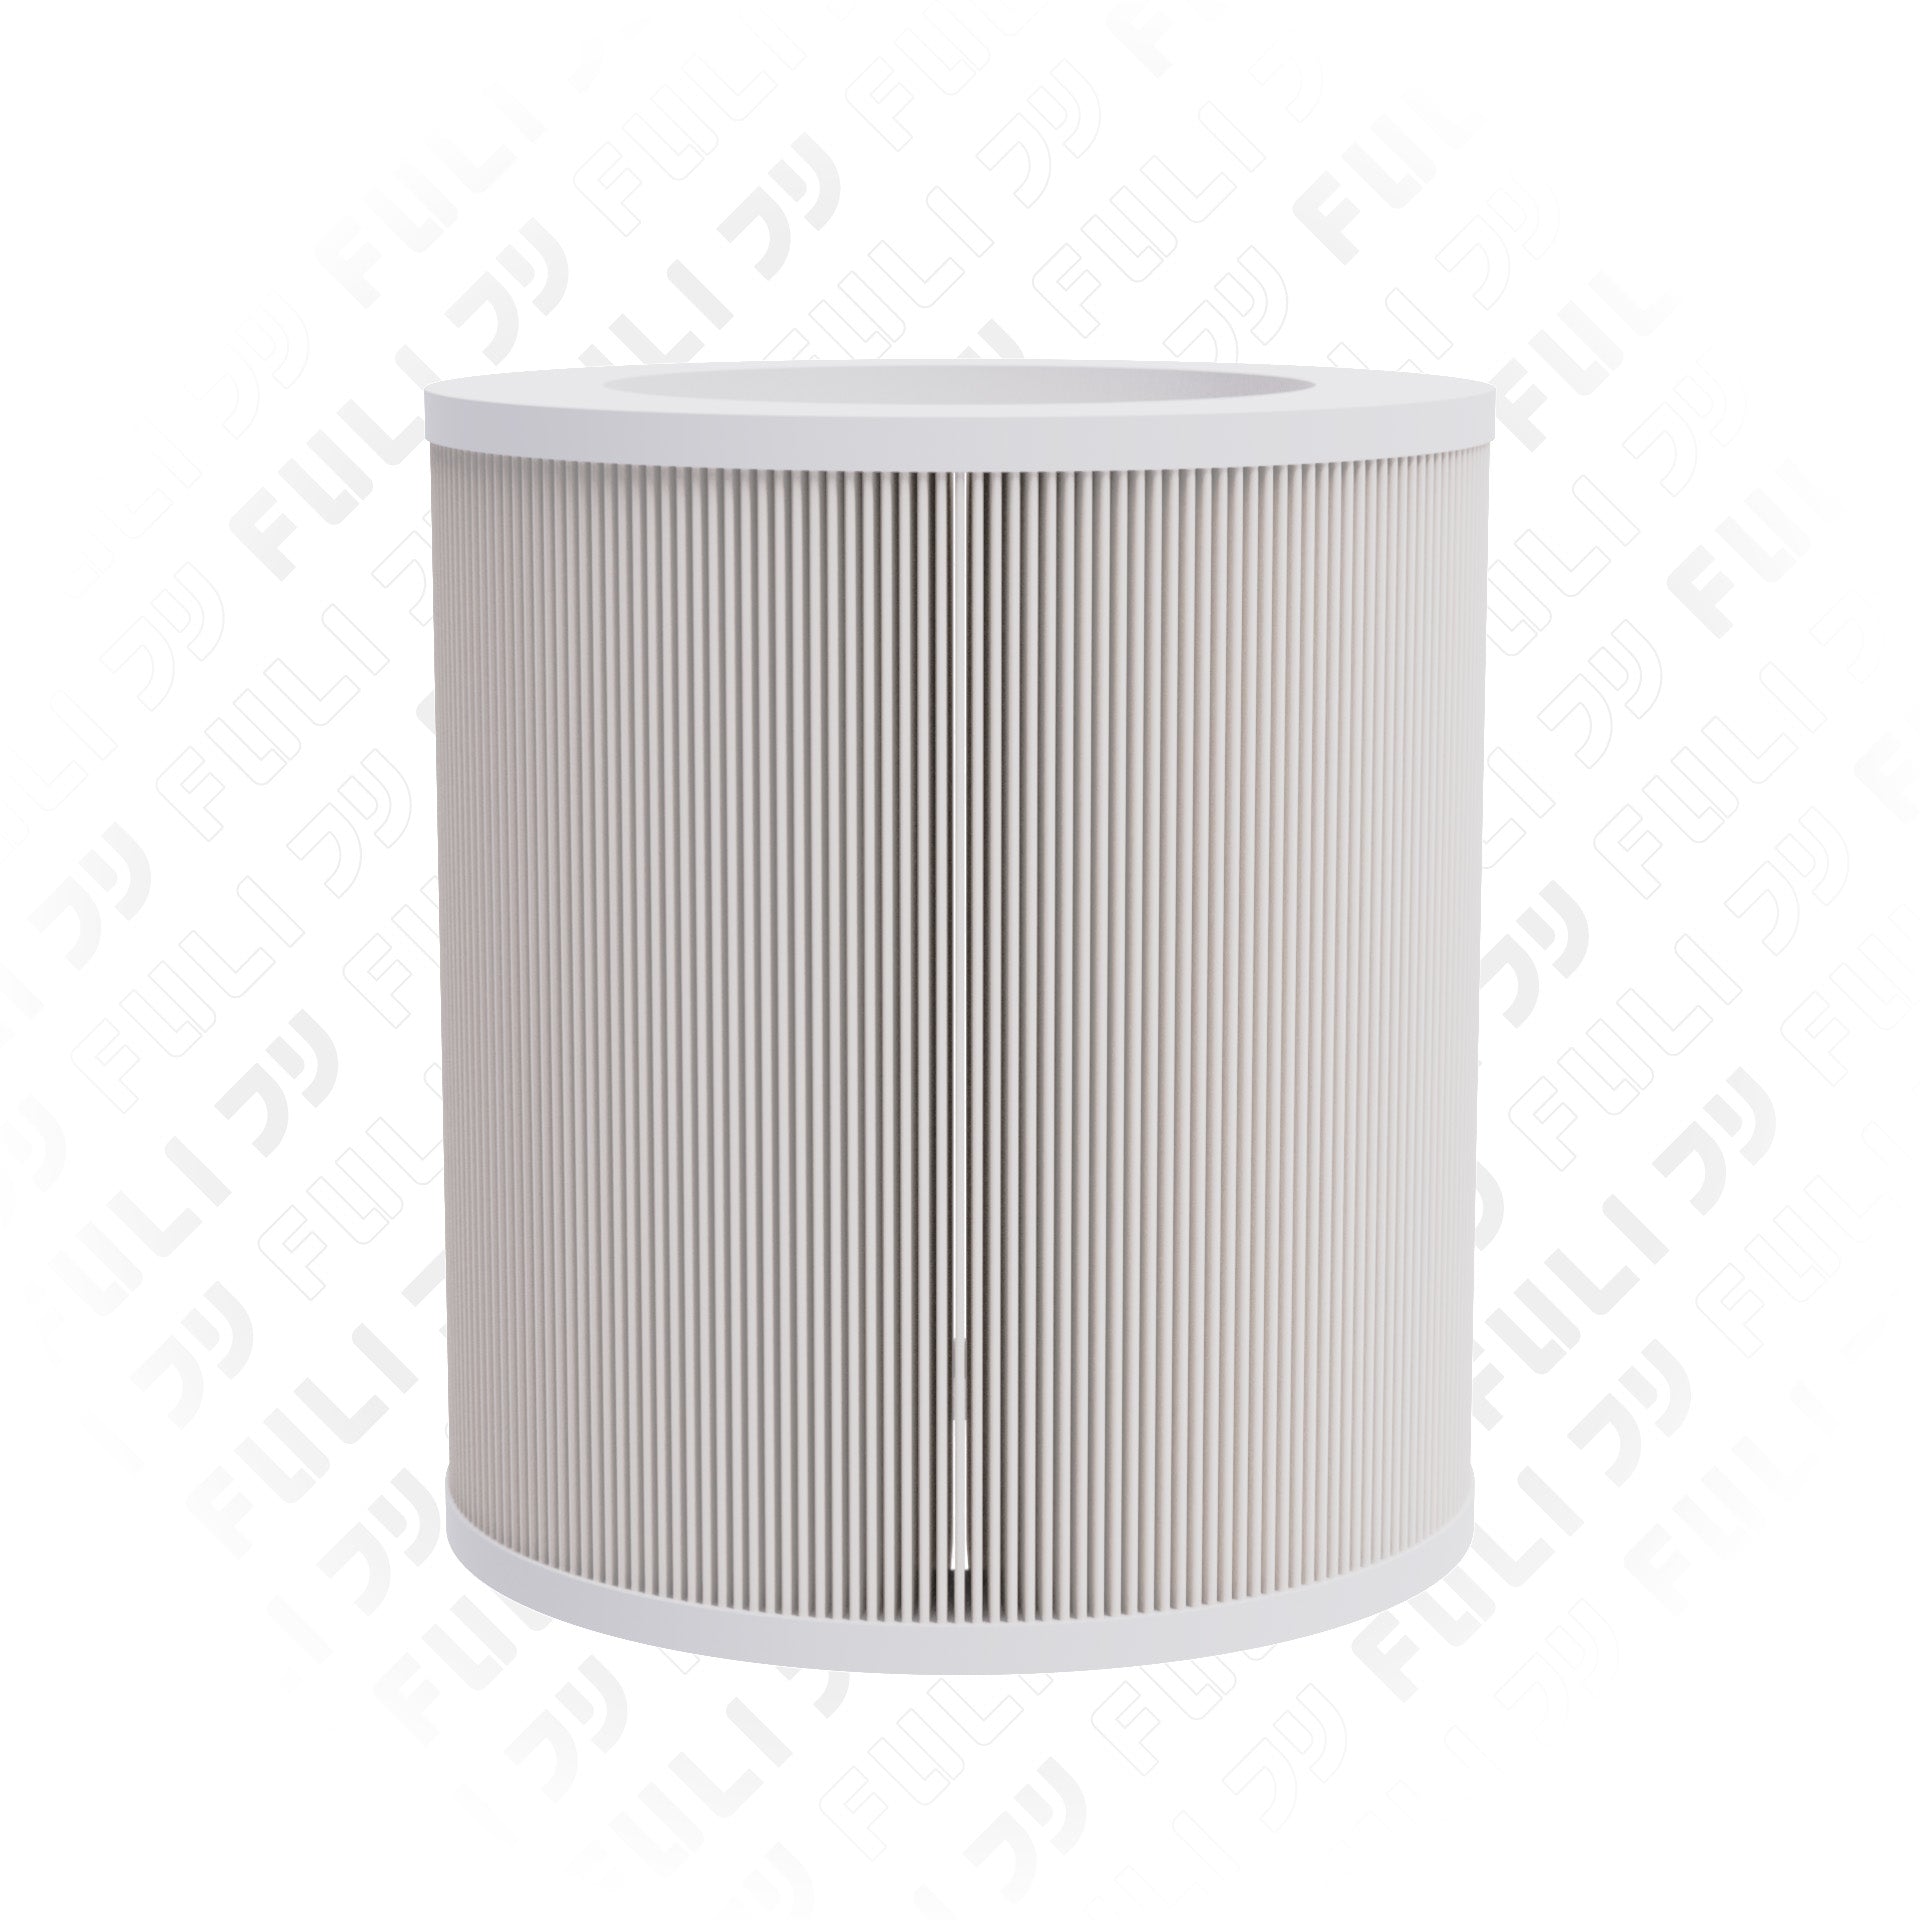 แผ่นกรอกสำหรับเครื่องฟอกอากาศ | FULI Smart Air Purifier Filter